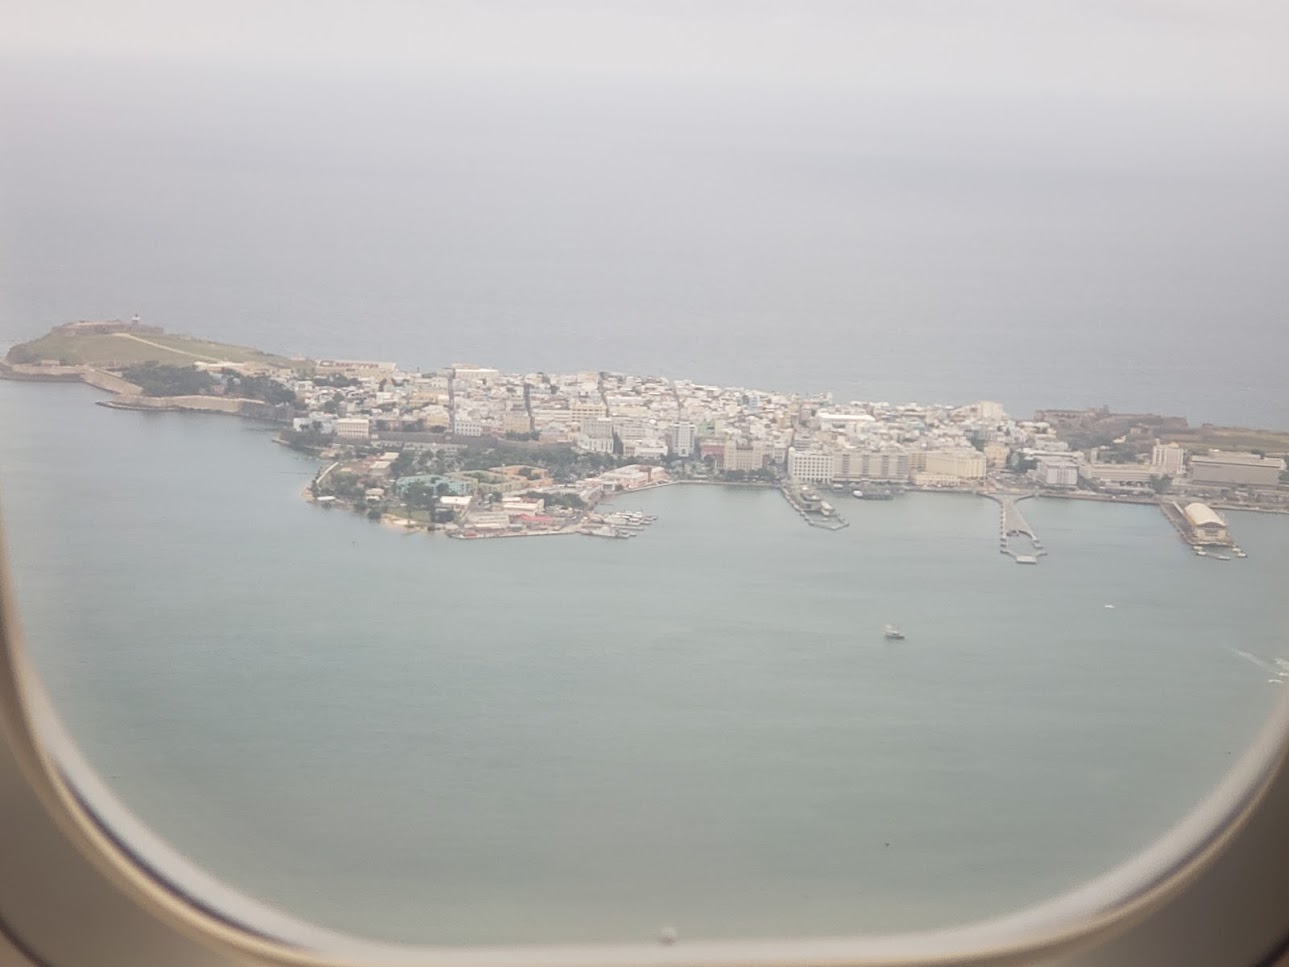 Puerto Rico Agosto 2018 - Aterrizando 4